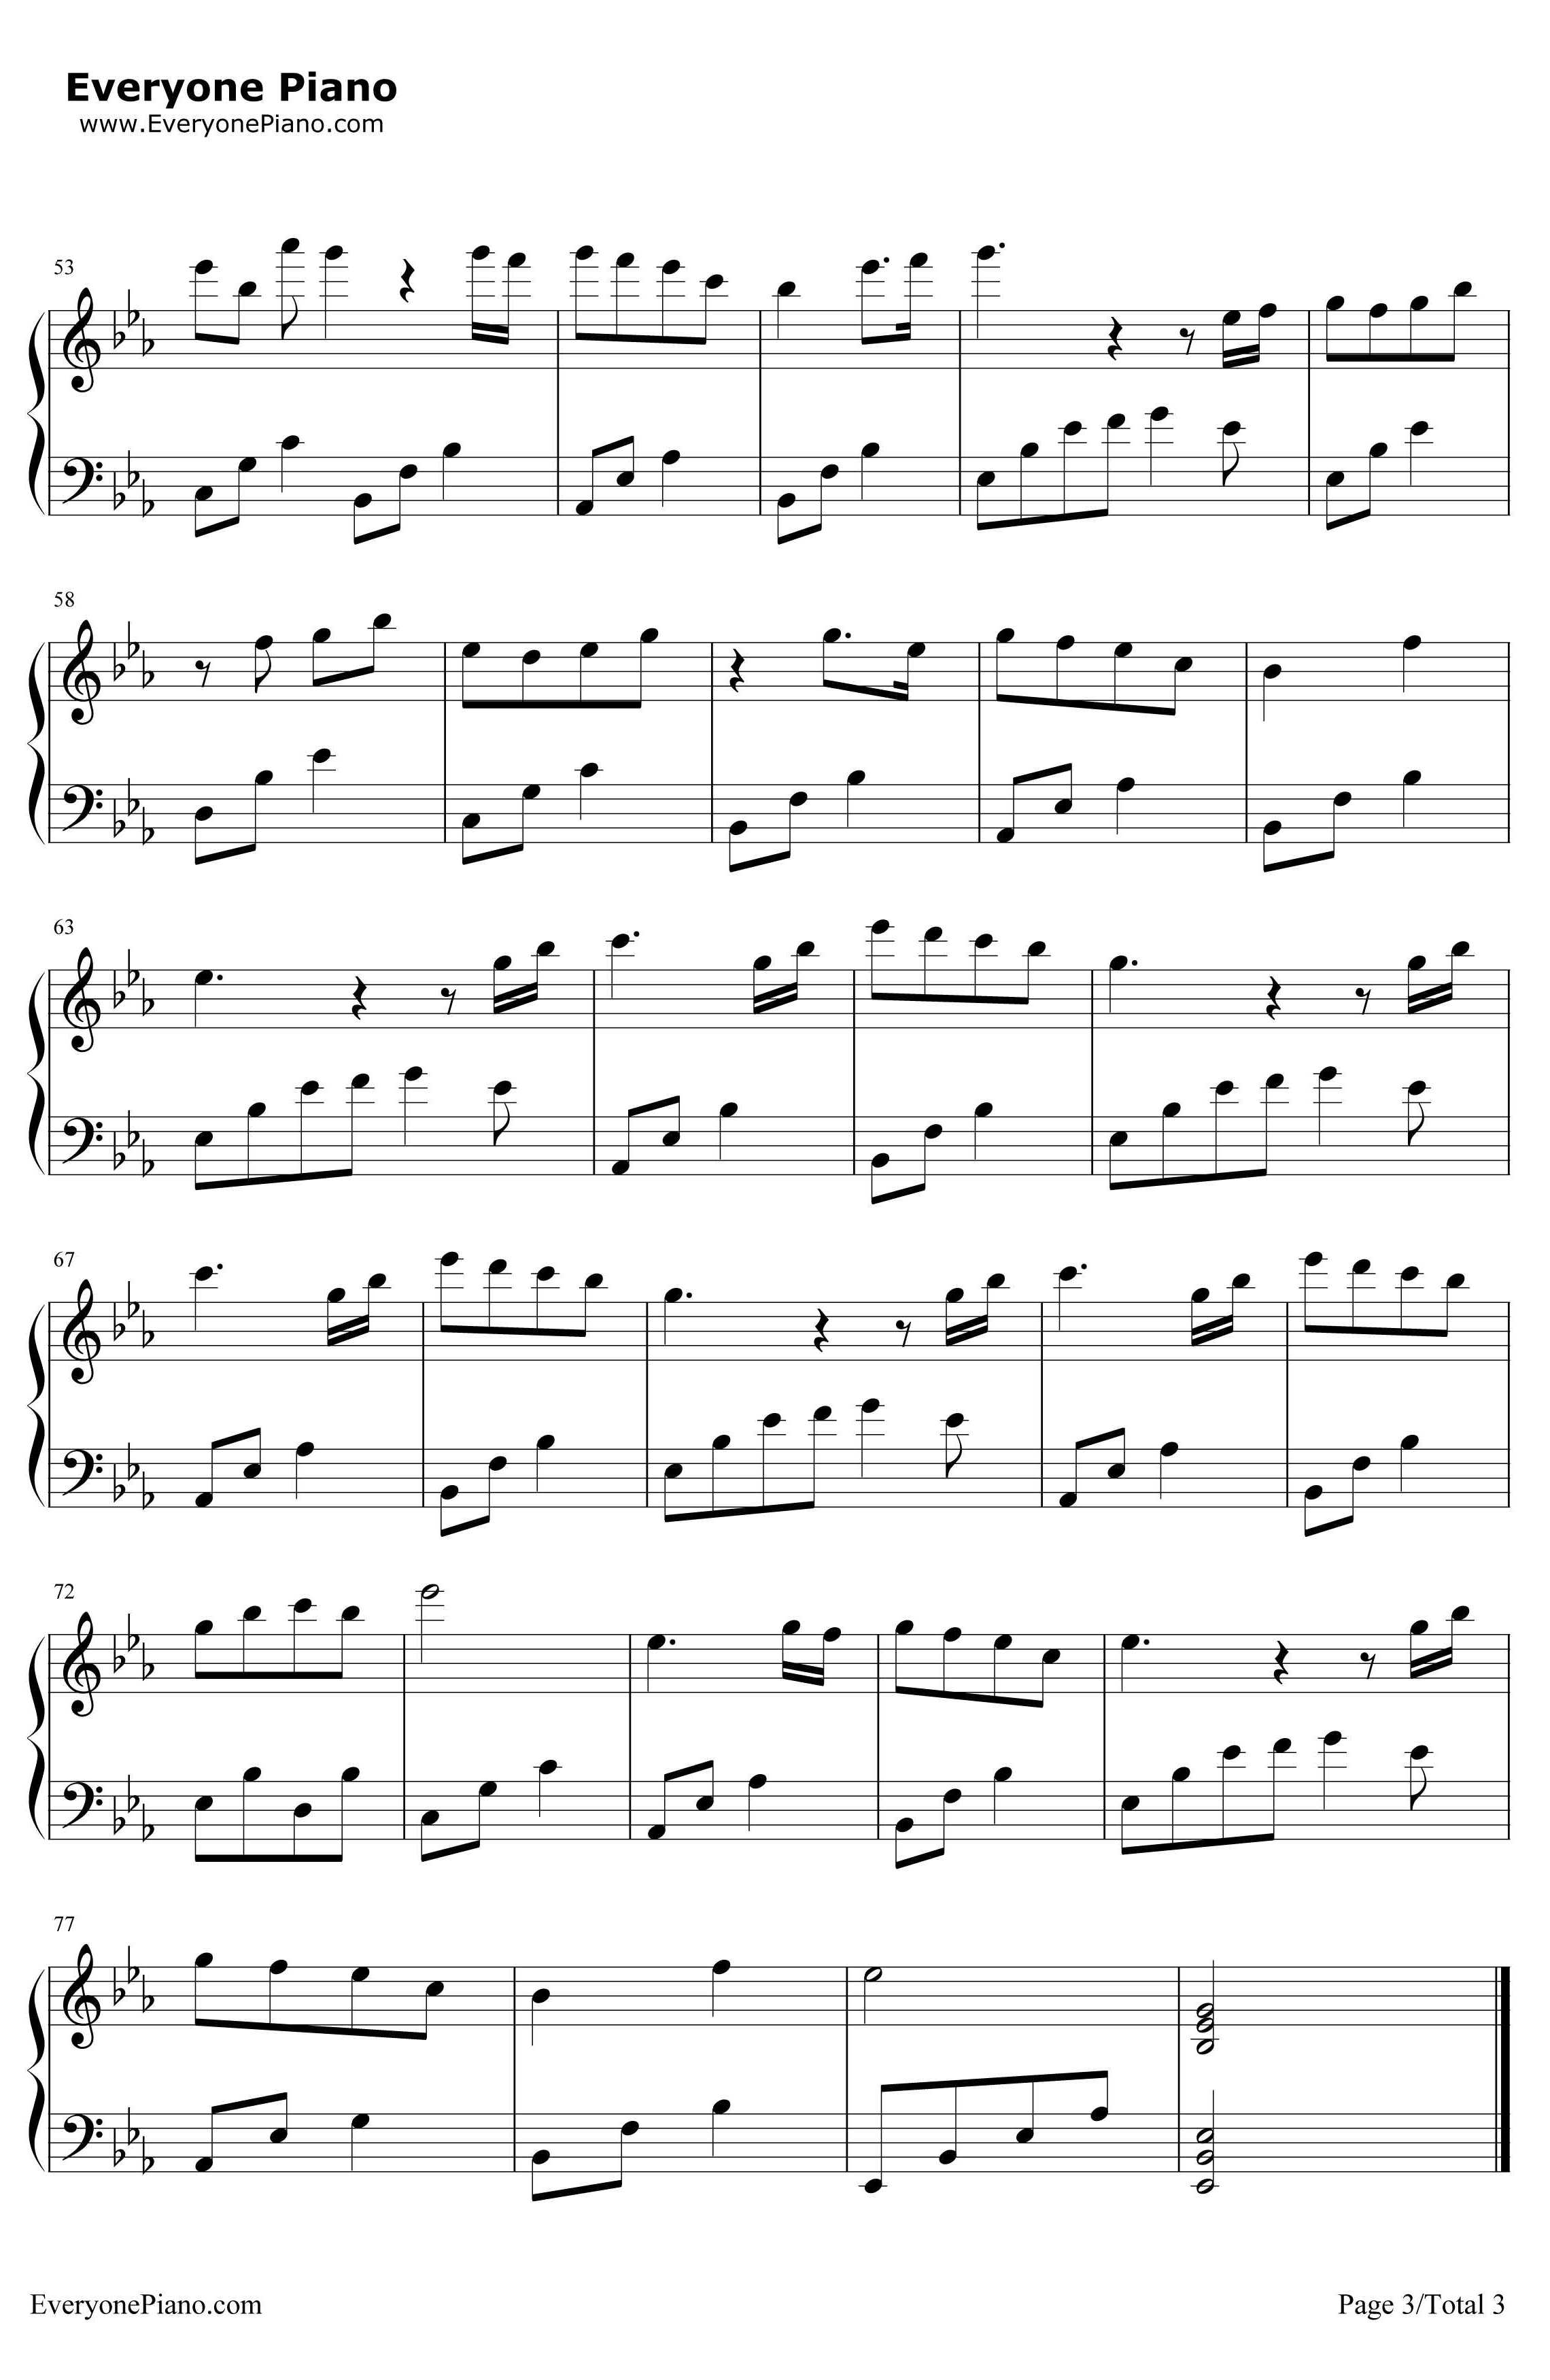 夜的钢琴曲15钢琴谱-石进-夜的钢琴曲153